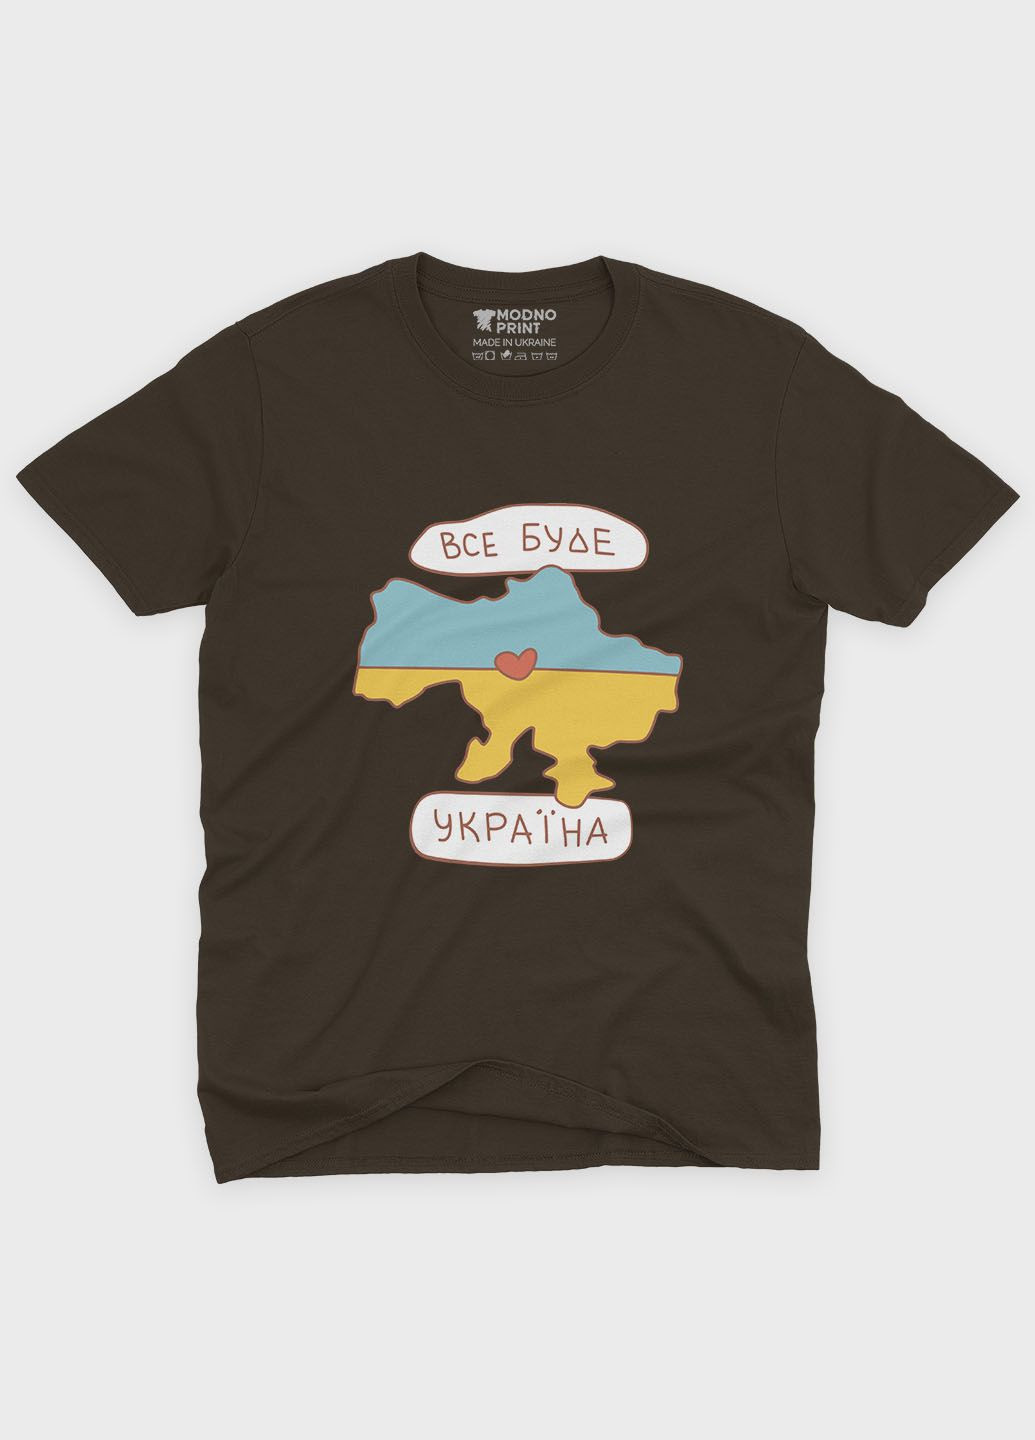 Коричневая летняя женская футболка с патриотическим принтом все будет украина (ts001-5-dch-005-1-134-f) Modno